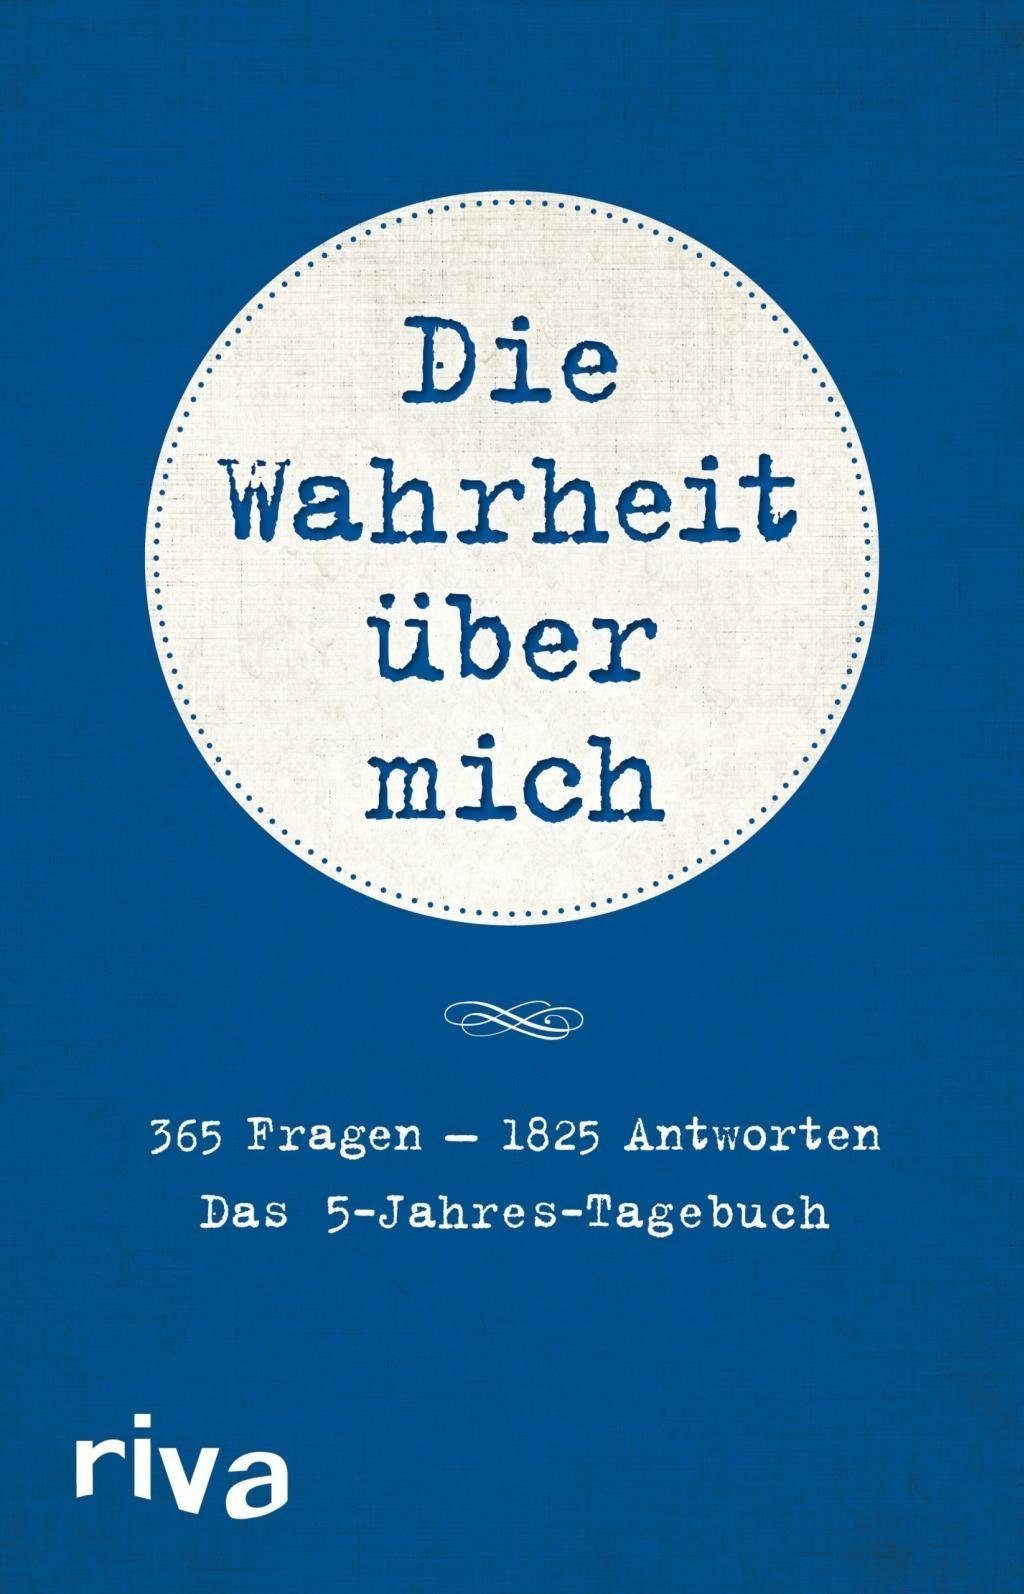 Das Die 5-Jahres-Tagebuch Wahrheit über Münchner – Verlagsgruppe mich Notizbuch